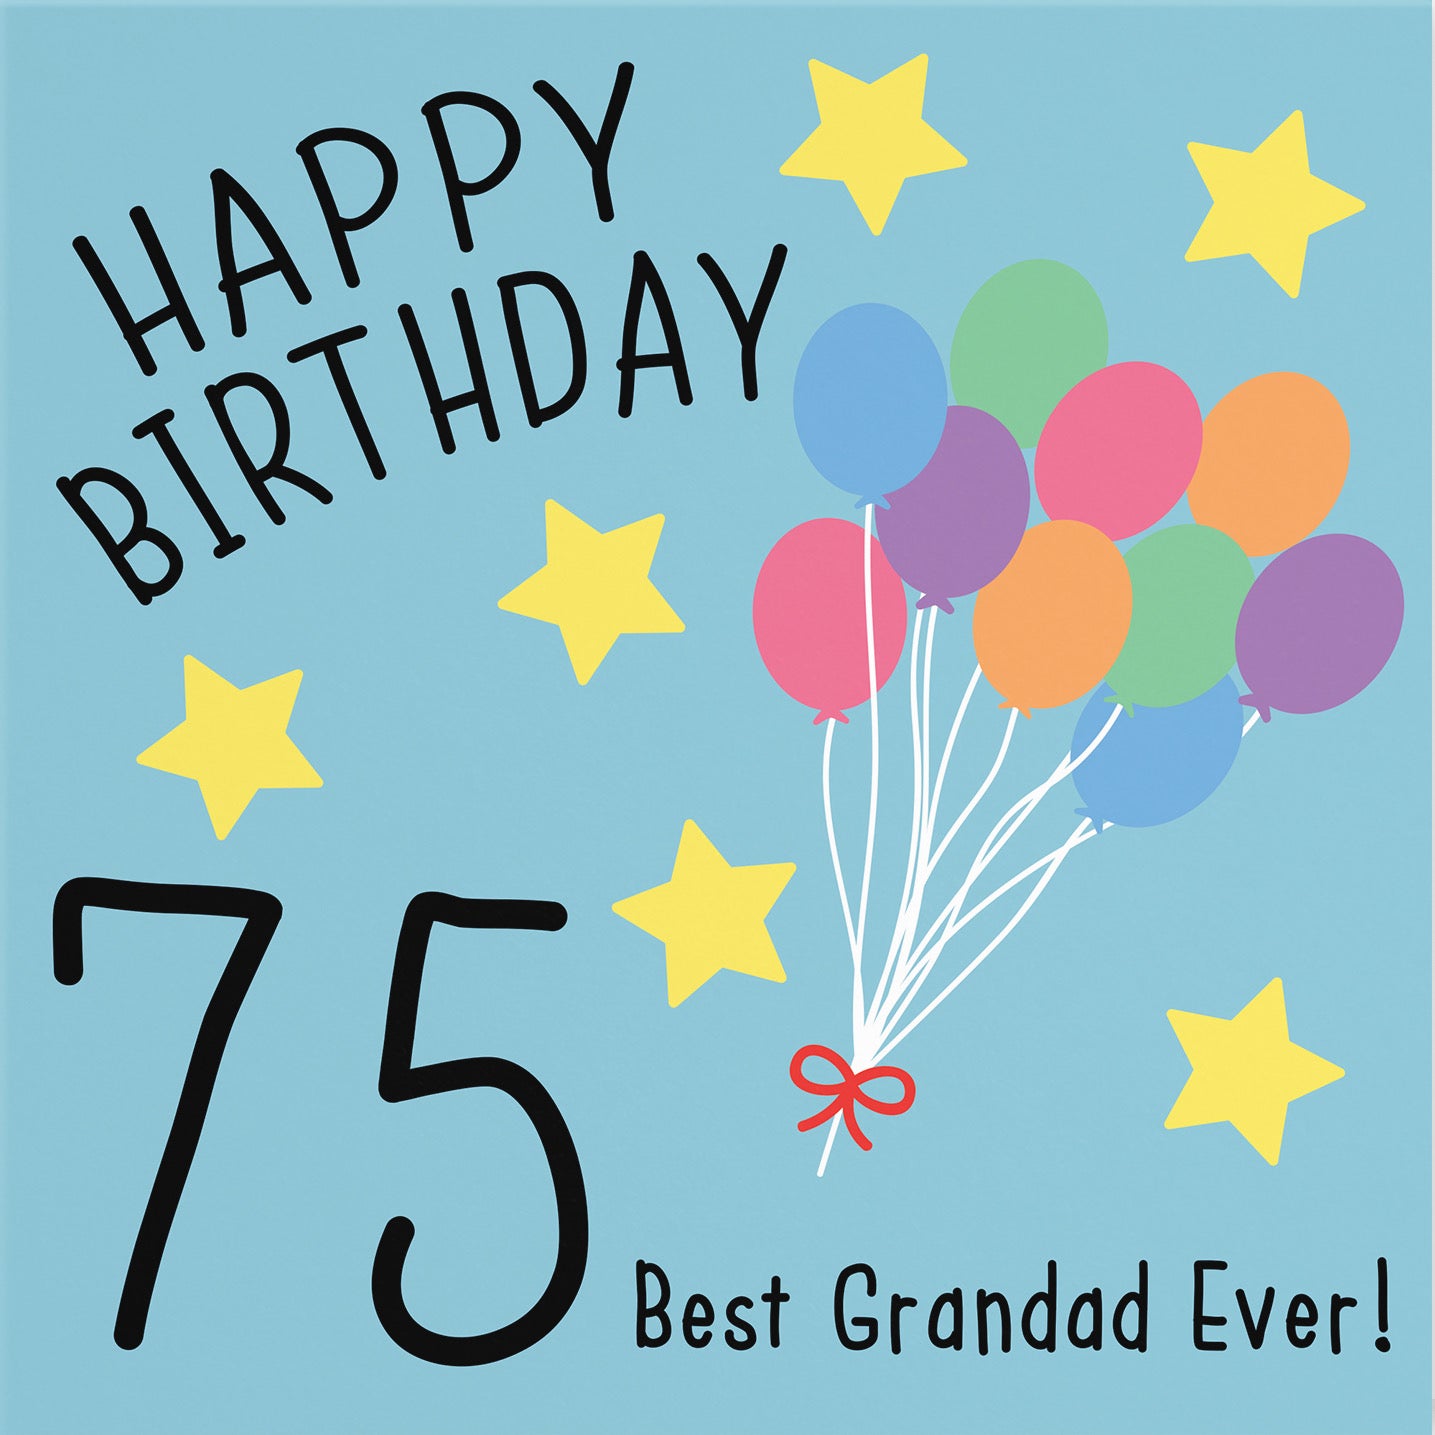 75th Grandad Birthday Card Original - Default Title (B07DCYN8G8)